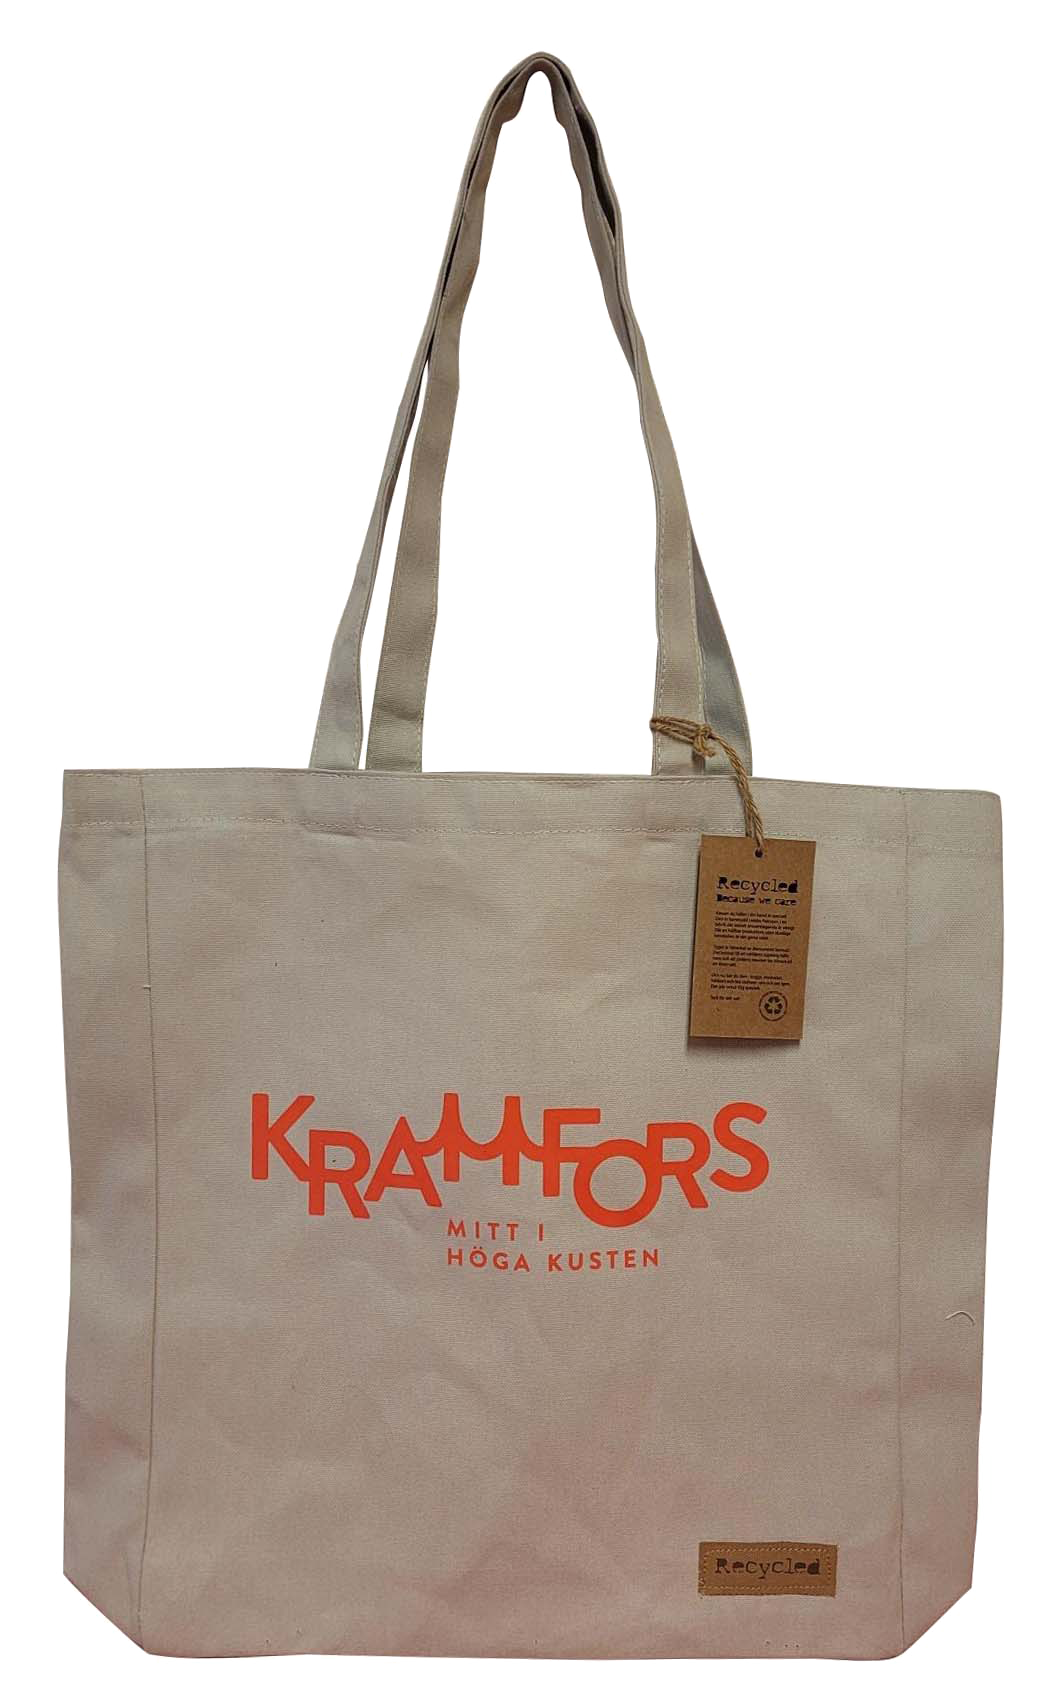 Väska i ekologiskt material med logotype Kramfors mitt i höga kusten